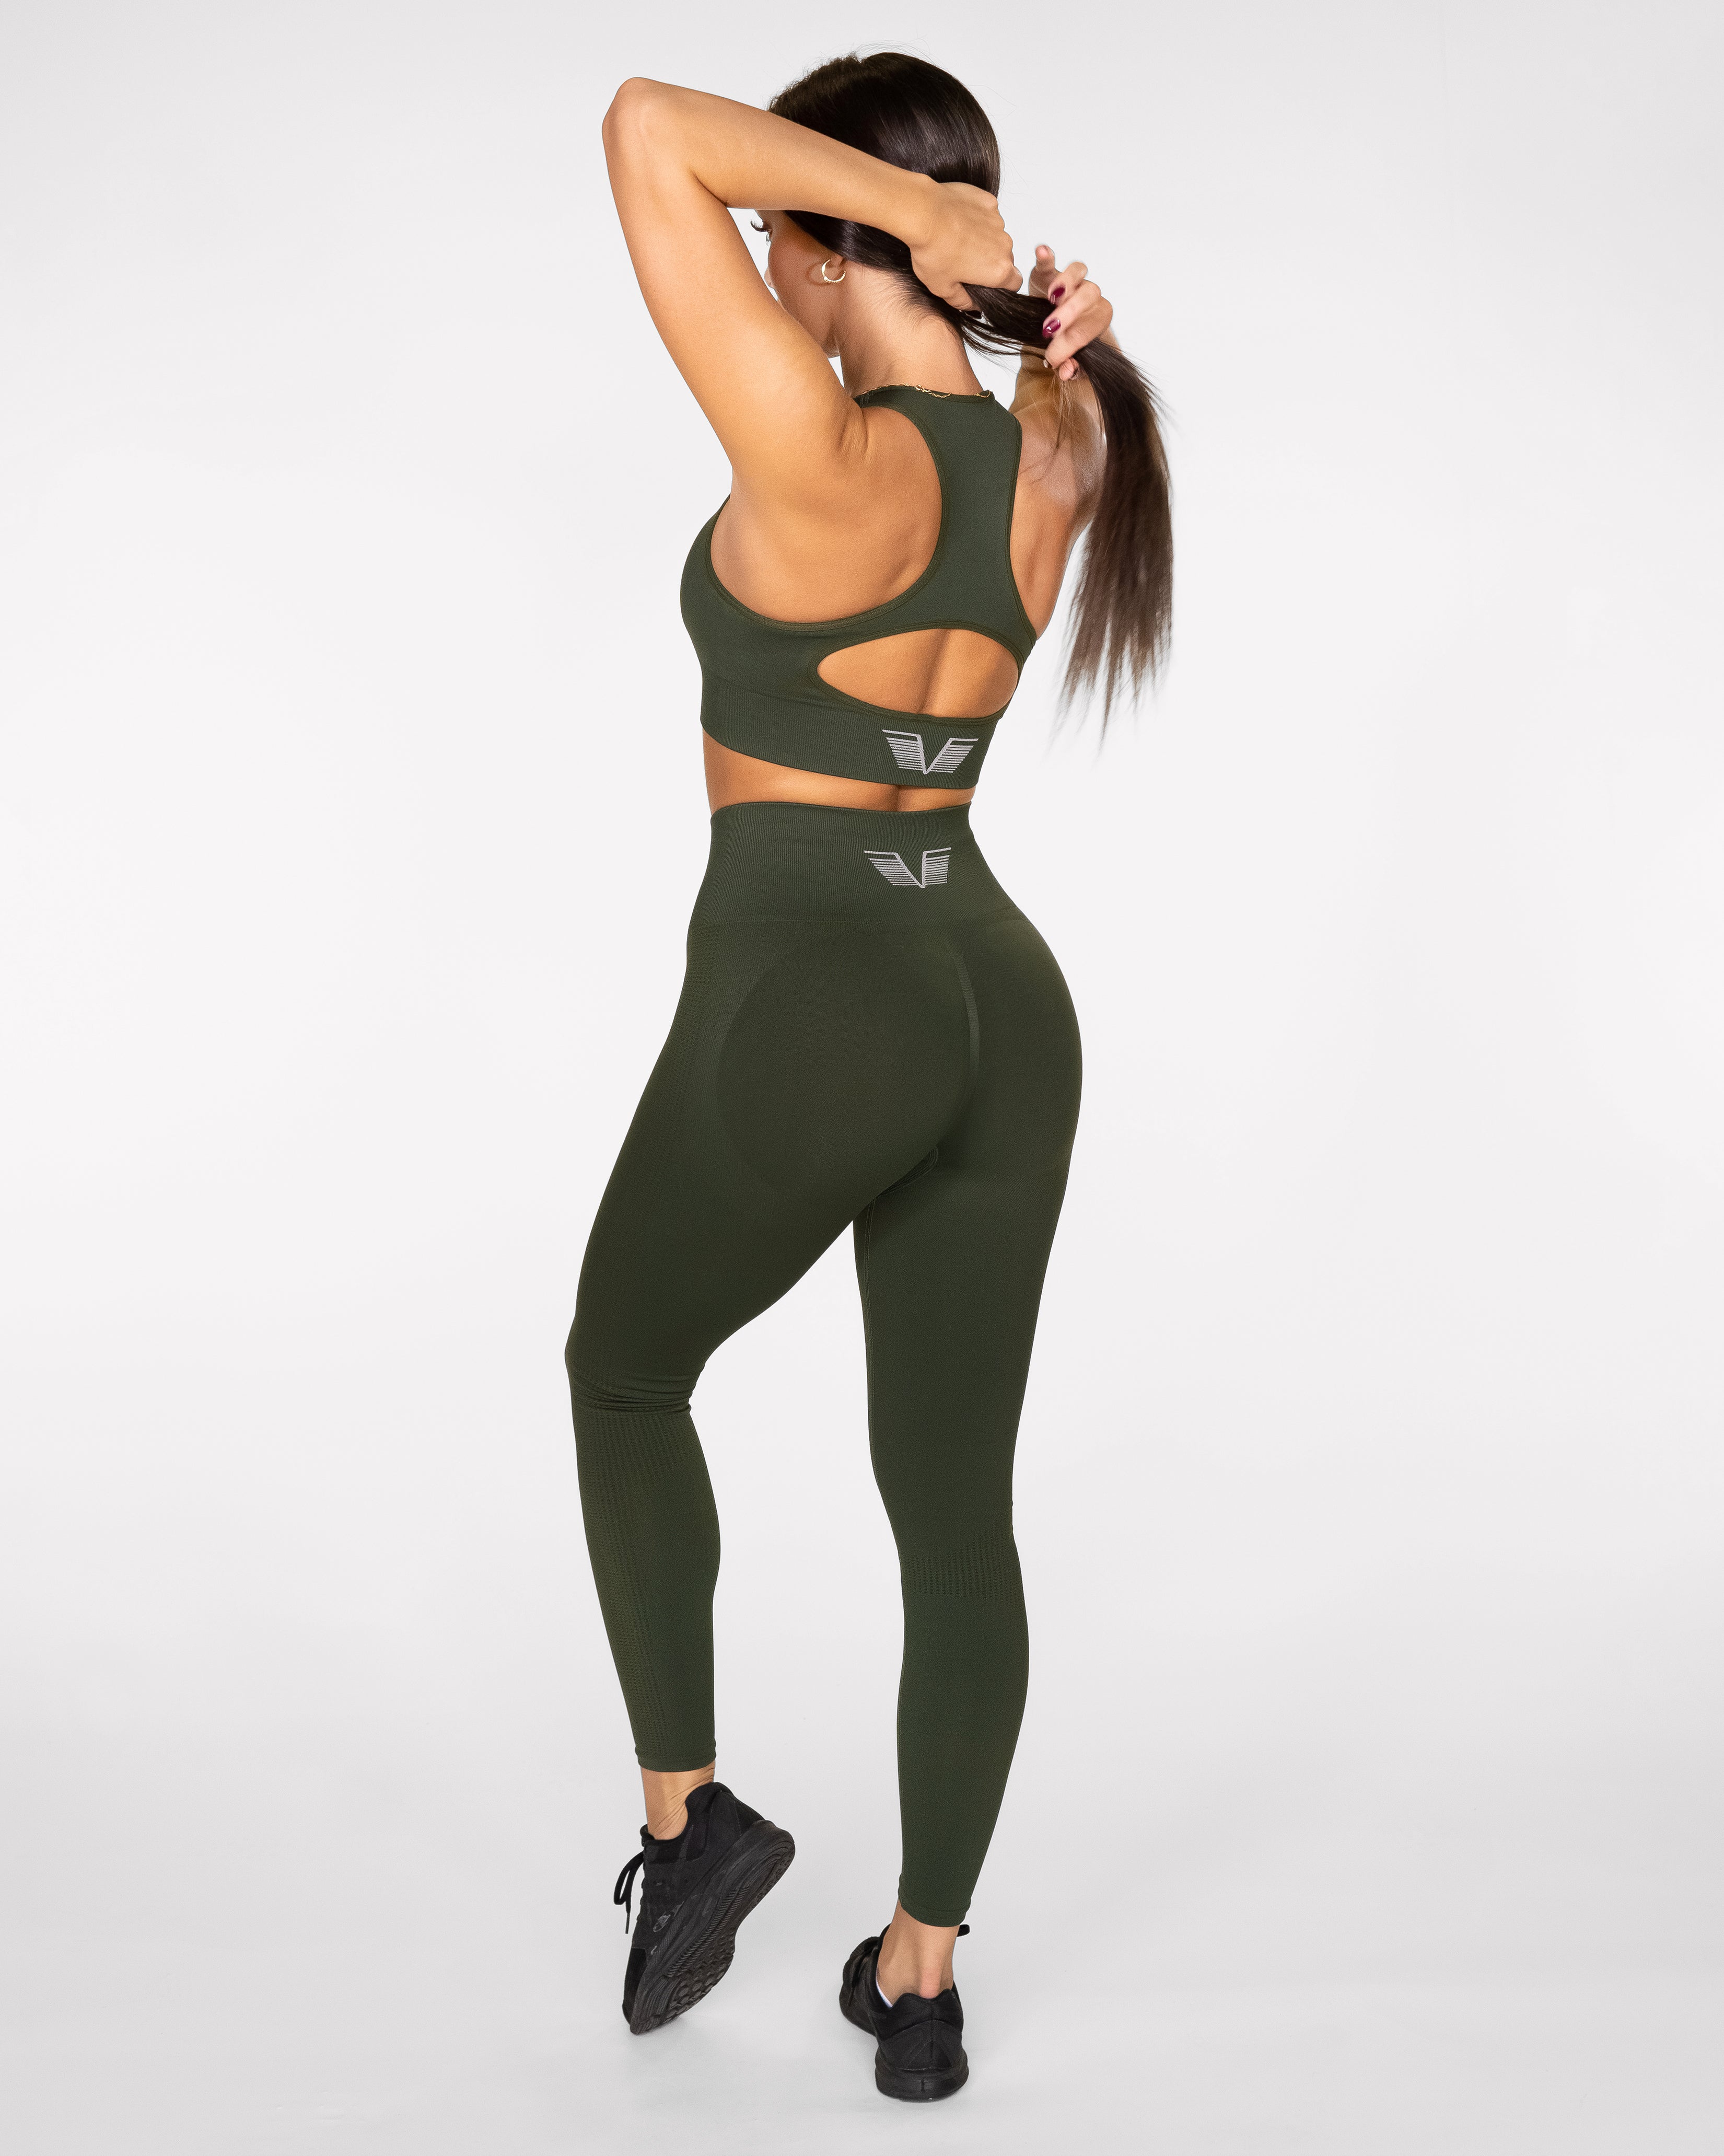 Gavelo POP Army Green Scrunch Leggings – Urban Gym Wear